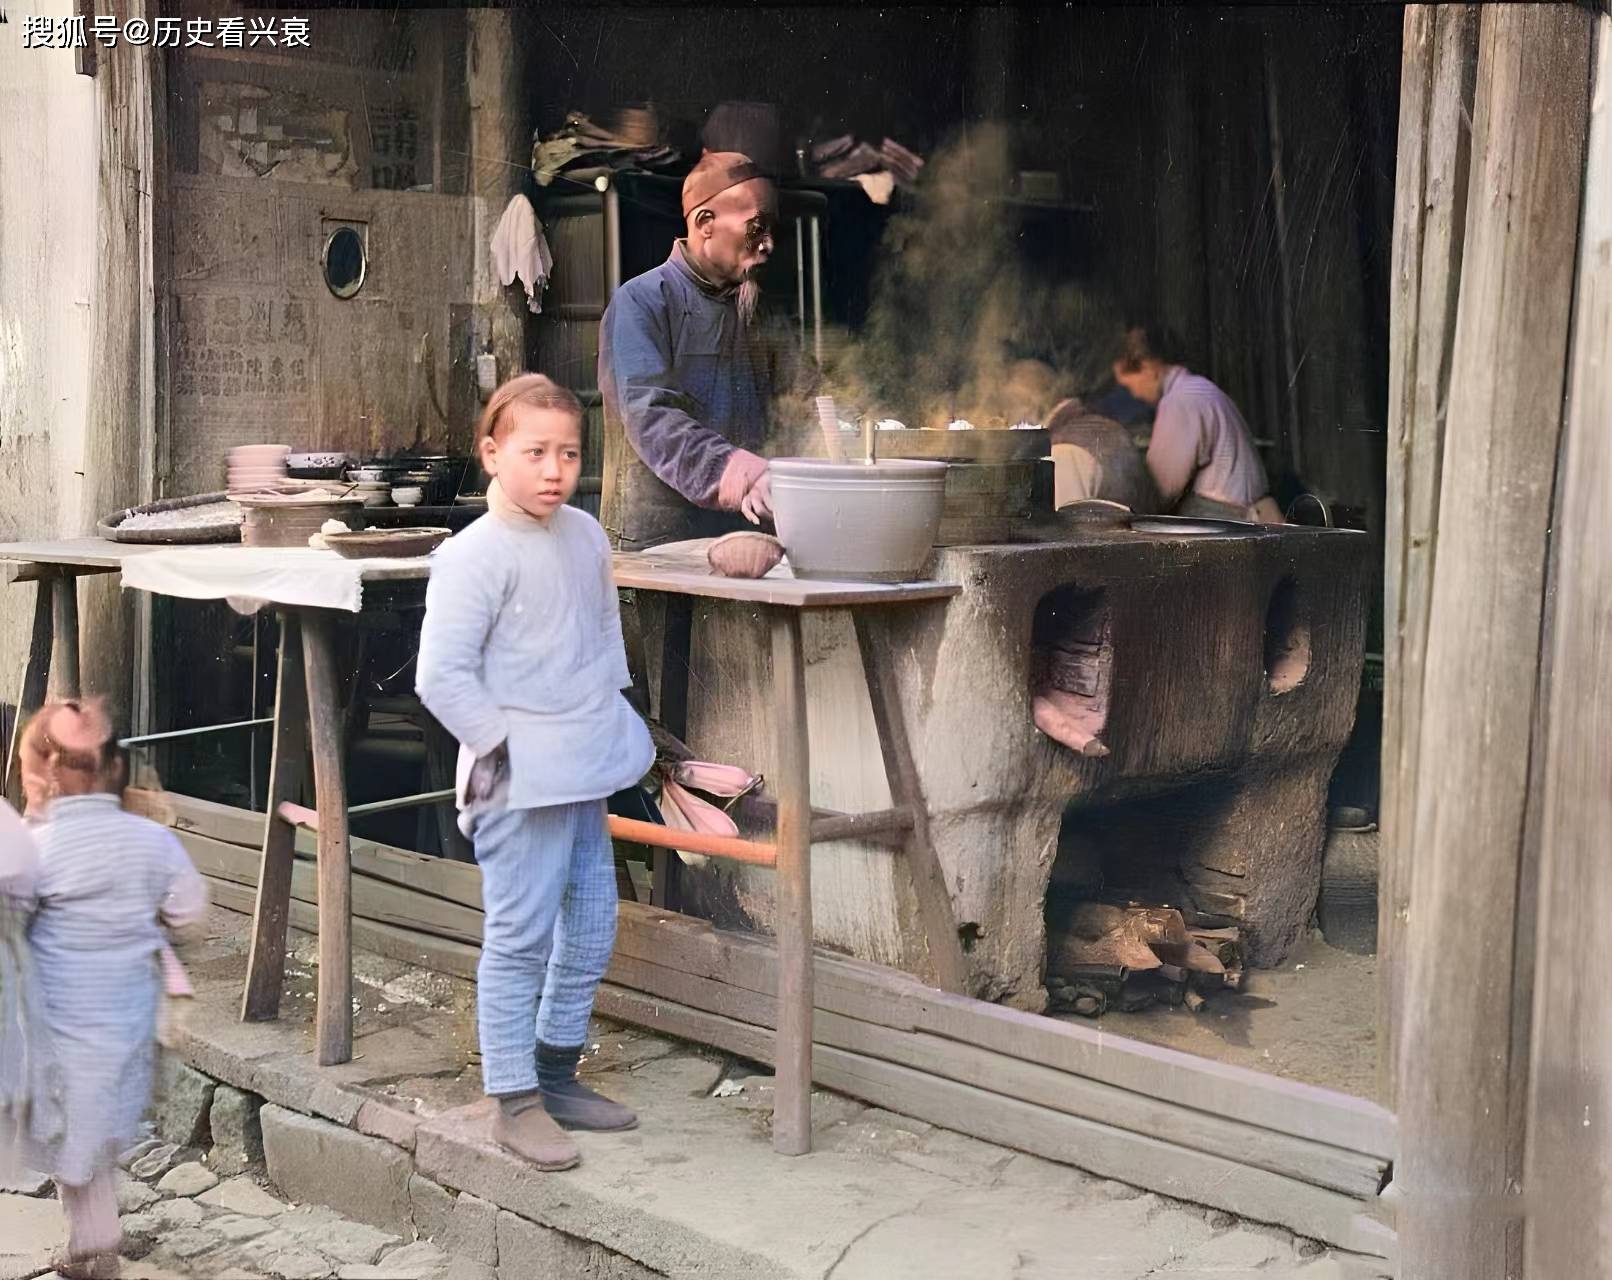 原创老照片民国时期的四川人民国时期北京的猎人